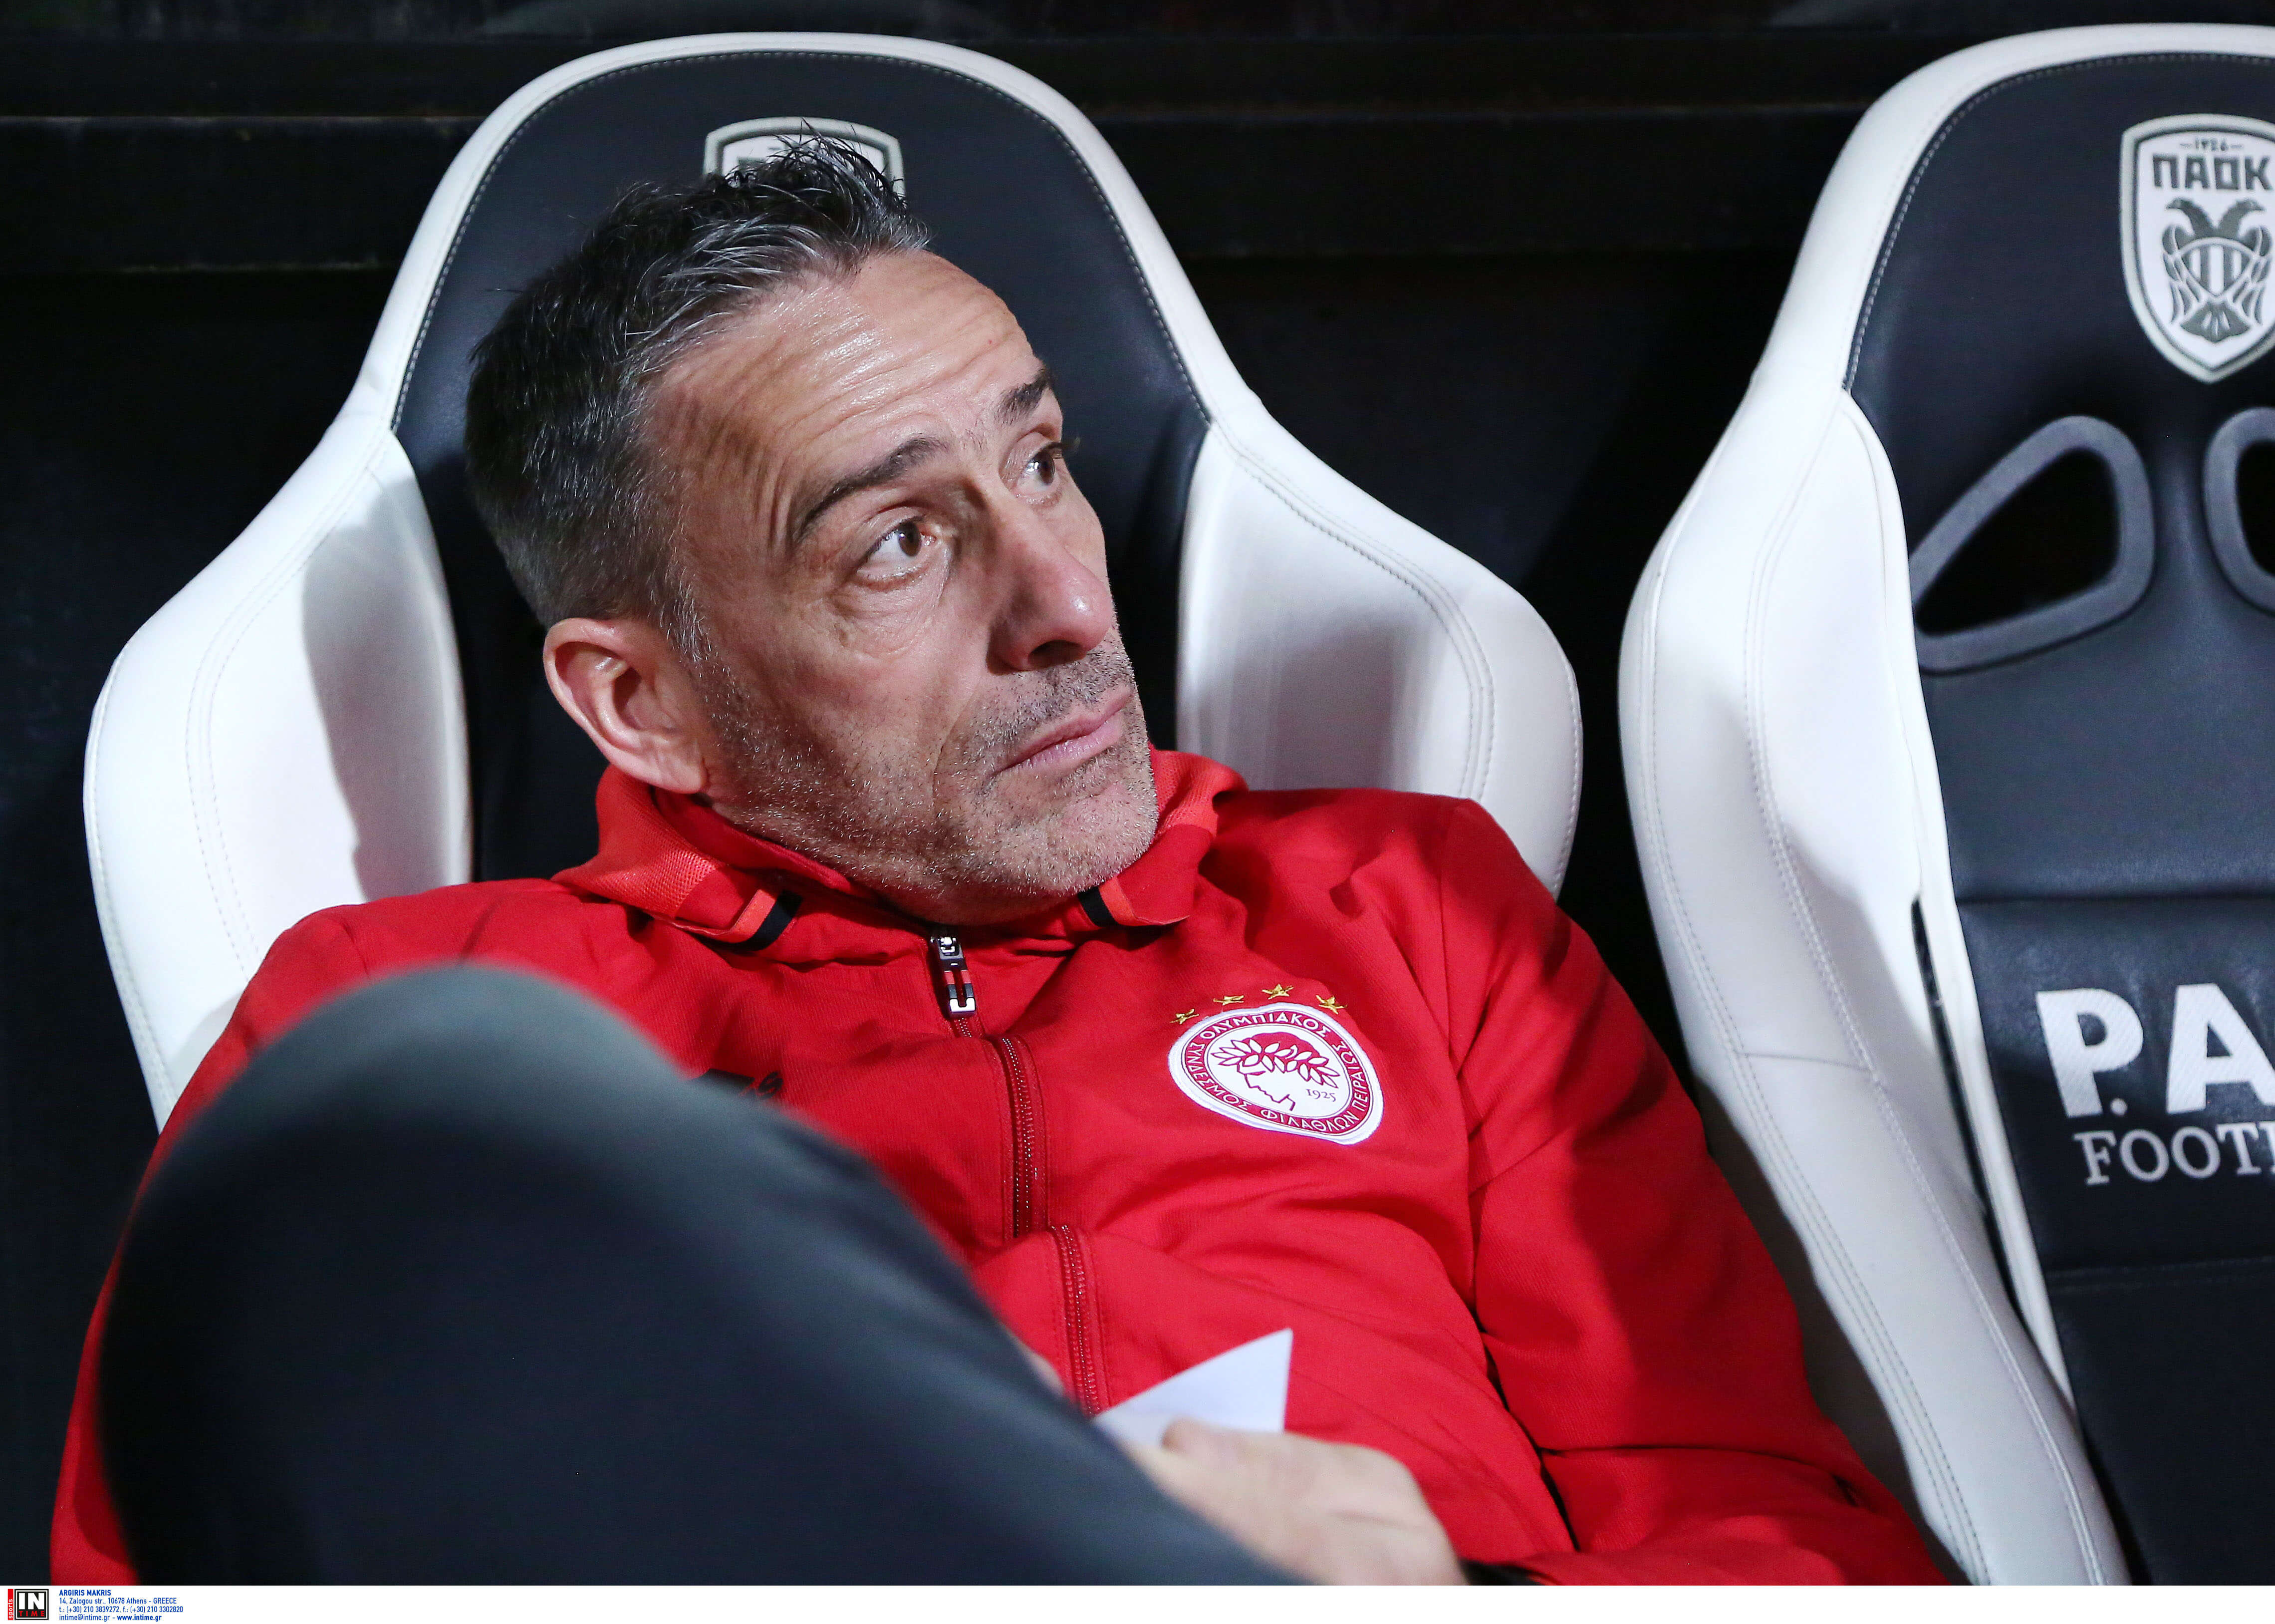 Πρώην προπονητής του Ολυμπιακού: “Ελπίζω να μην γίνει η Πορτογαλία σαν την Ελλάδα”